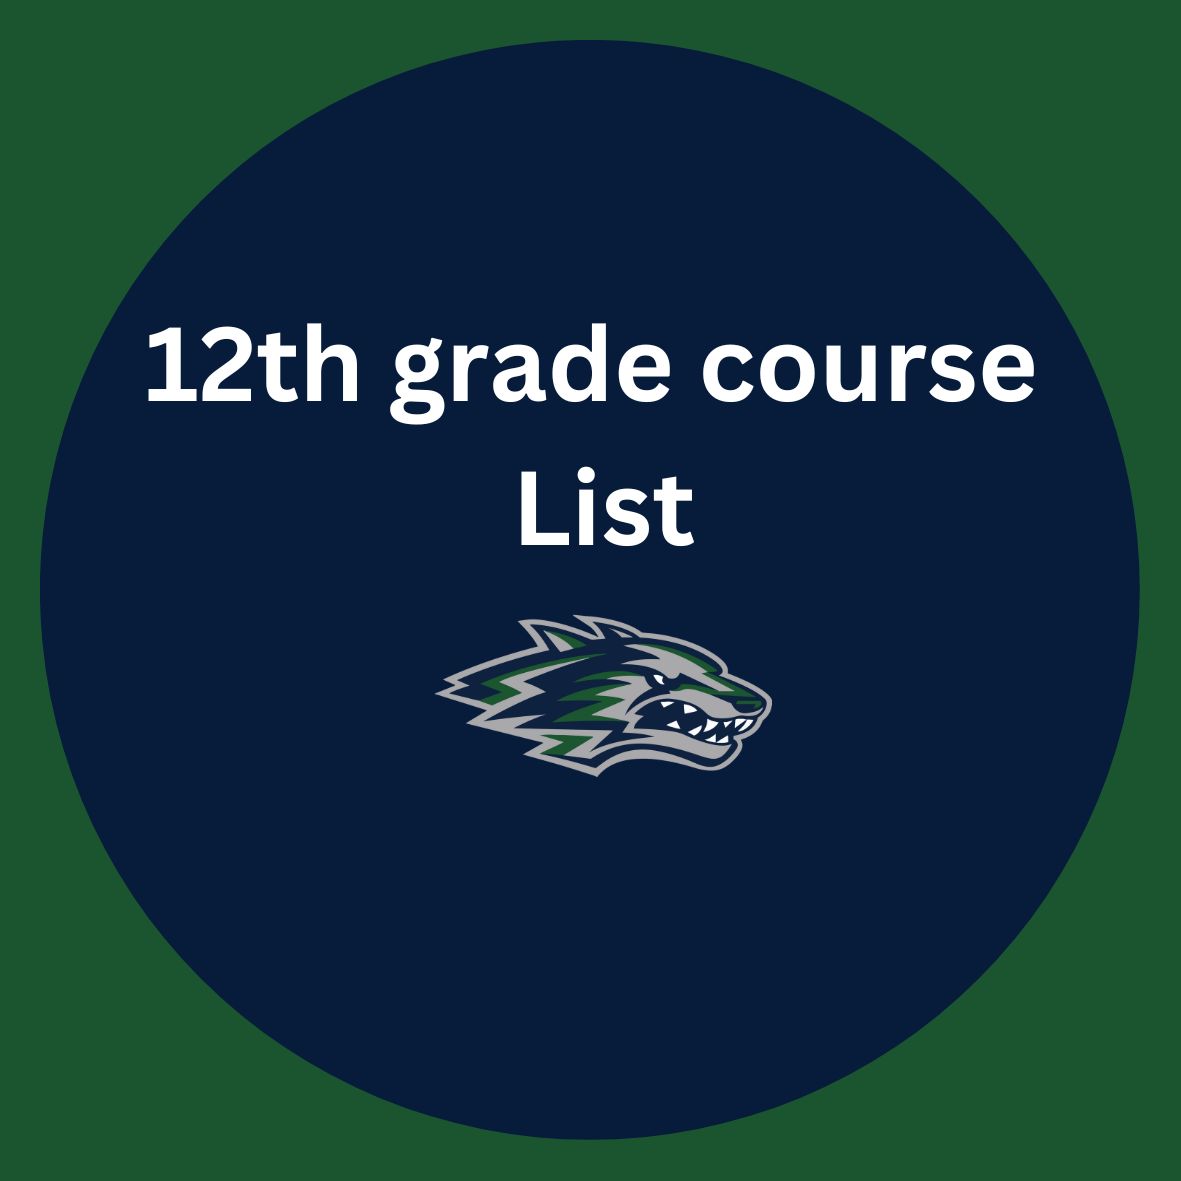 12th grade course list